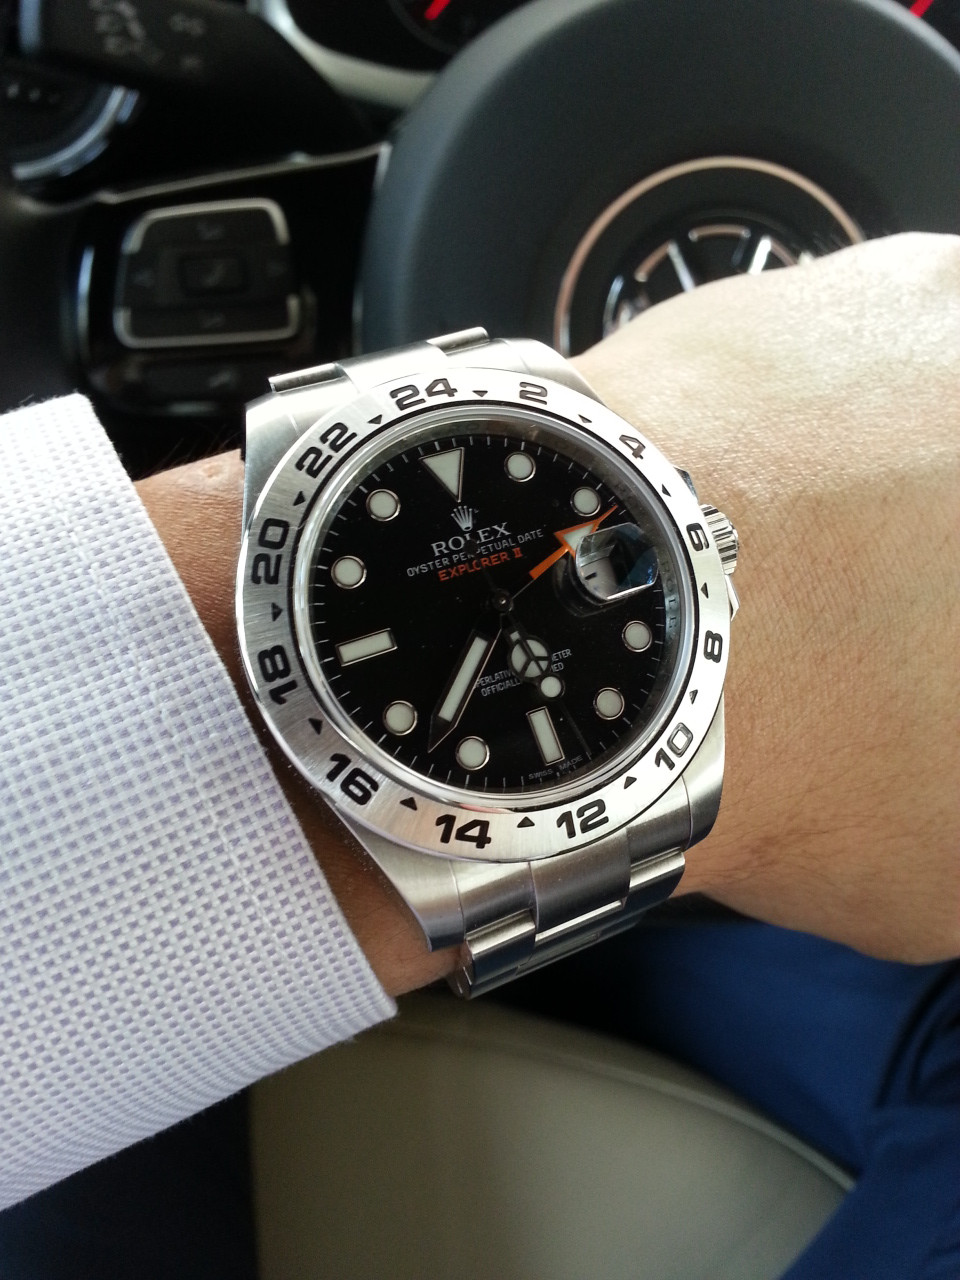 5 mẹo nhân biết một chiếc đồng hồ Rolex hàng hiệu chính hãng có giá trị